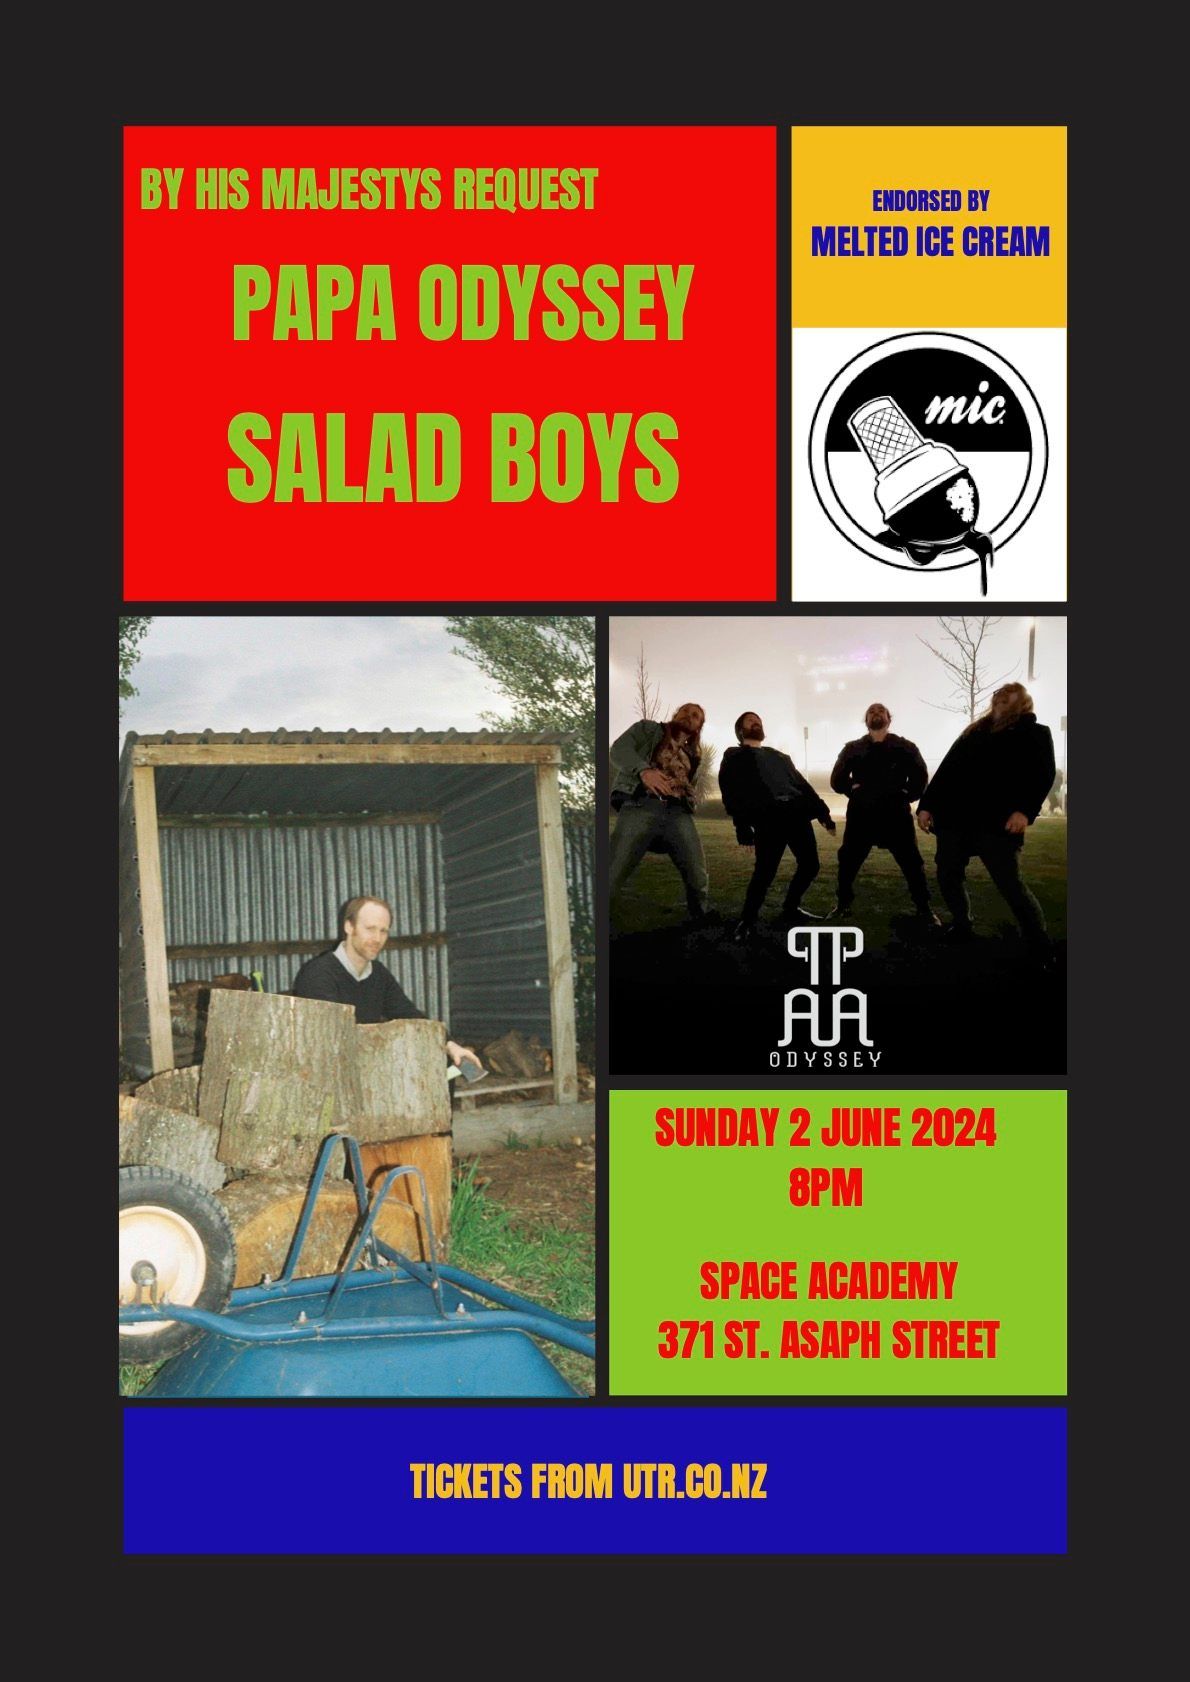 Plucky Sunday's Vol3 - SALAD BOYS + PAPA ODYSSEY